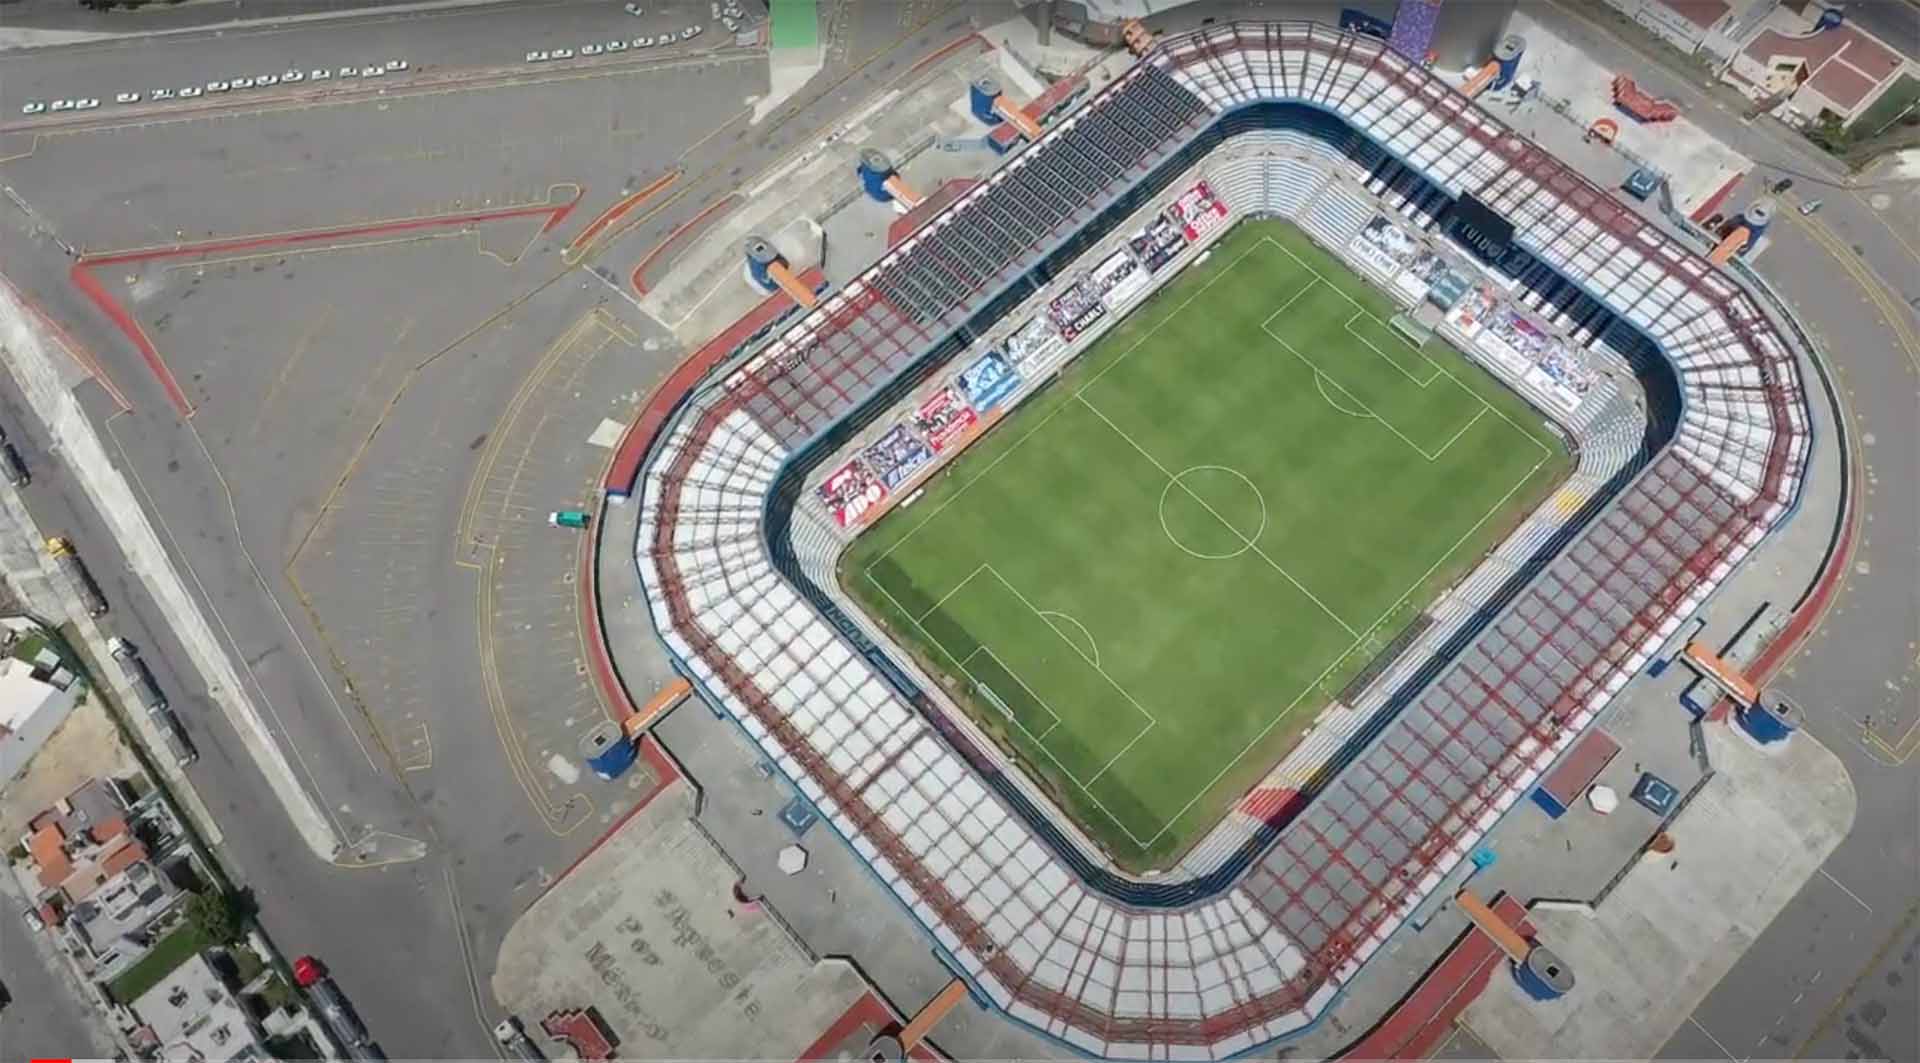 Pachuca Stadium